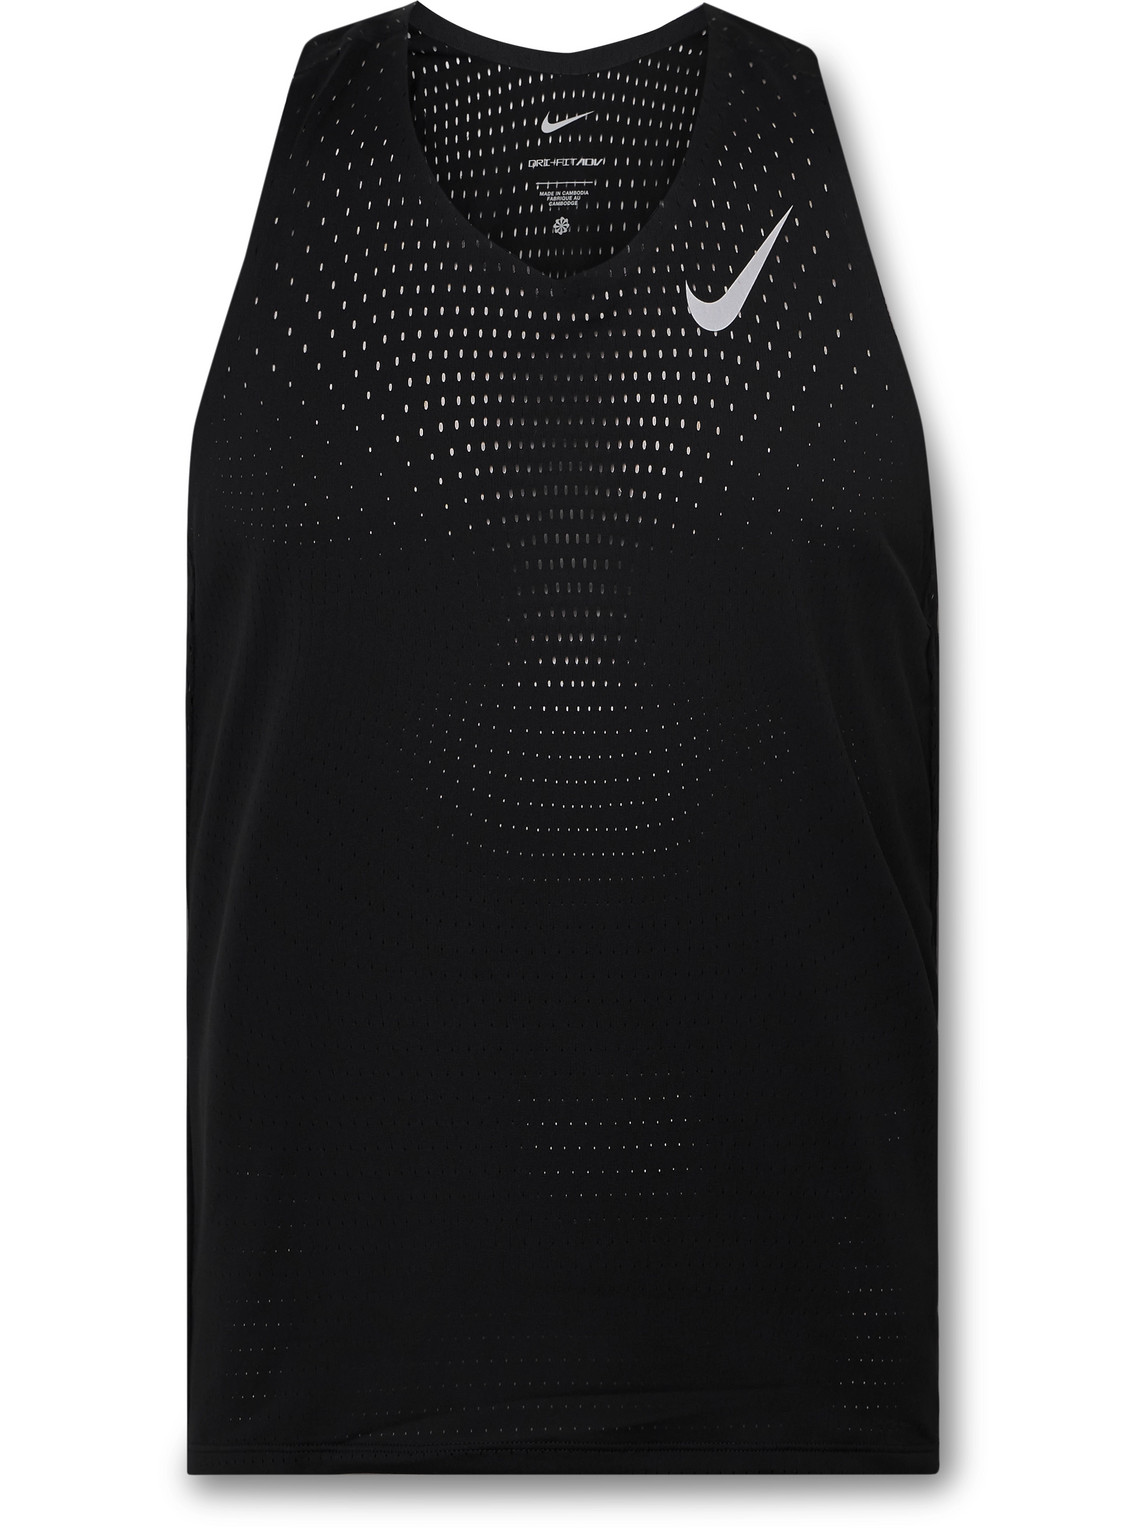 Nike Aeroswift Slim-fit Perforated Dri-fit Adv Tank Top In Black